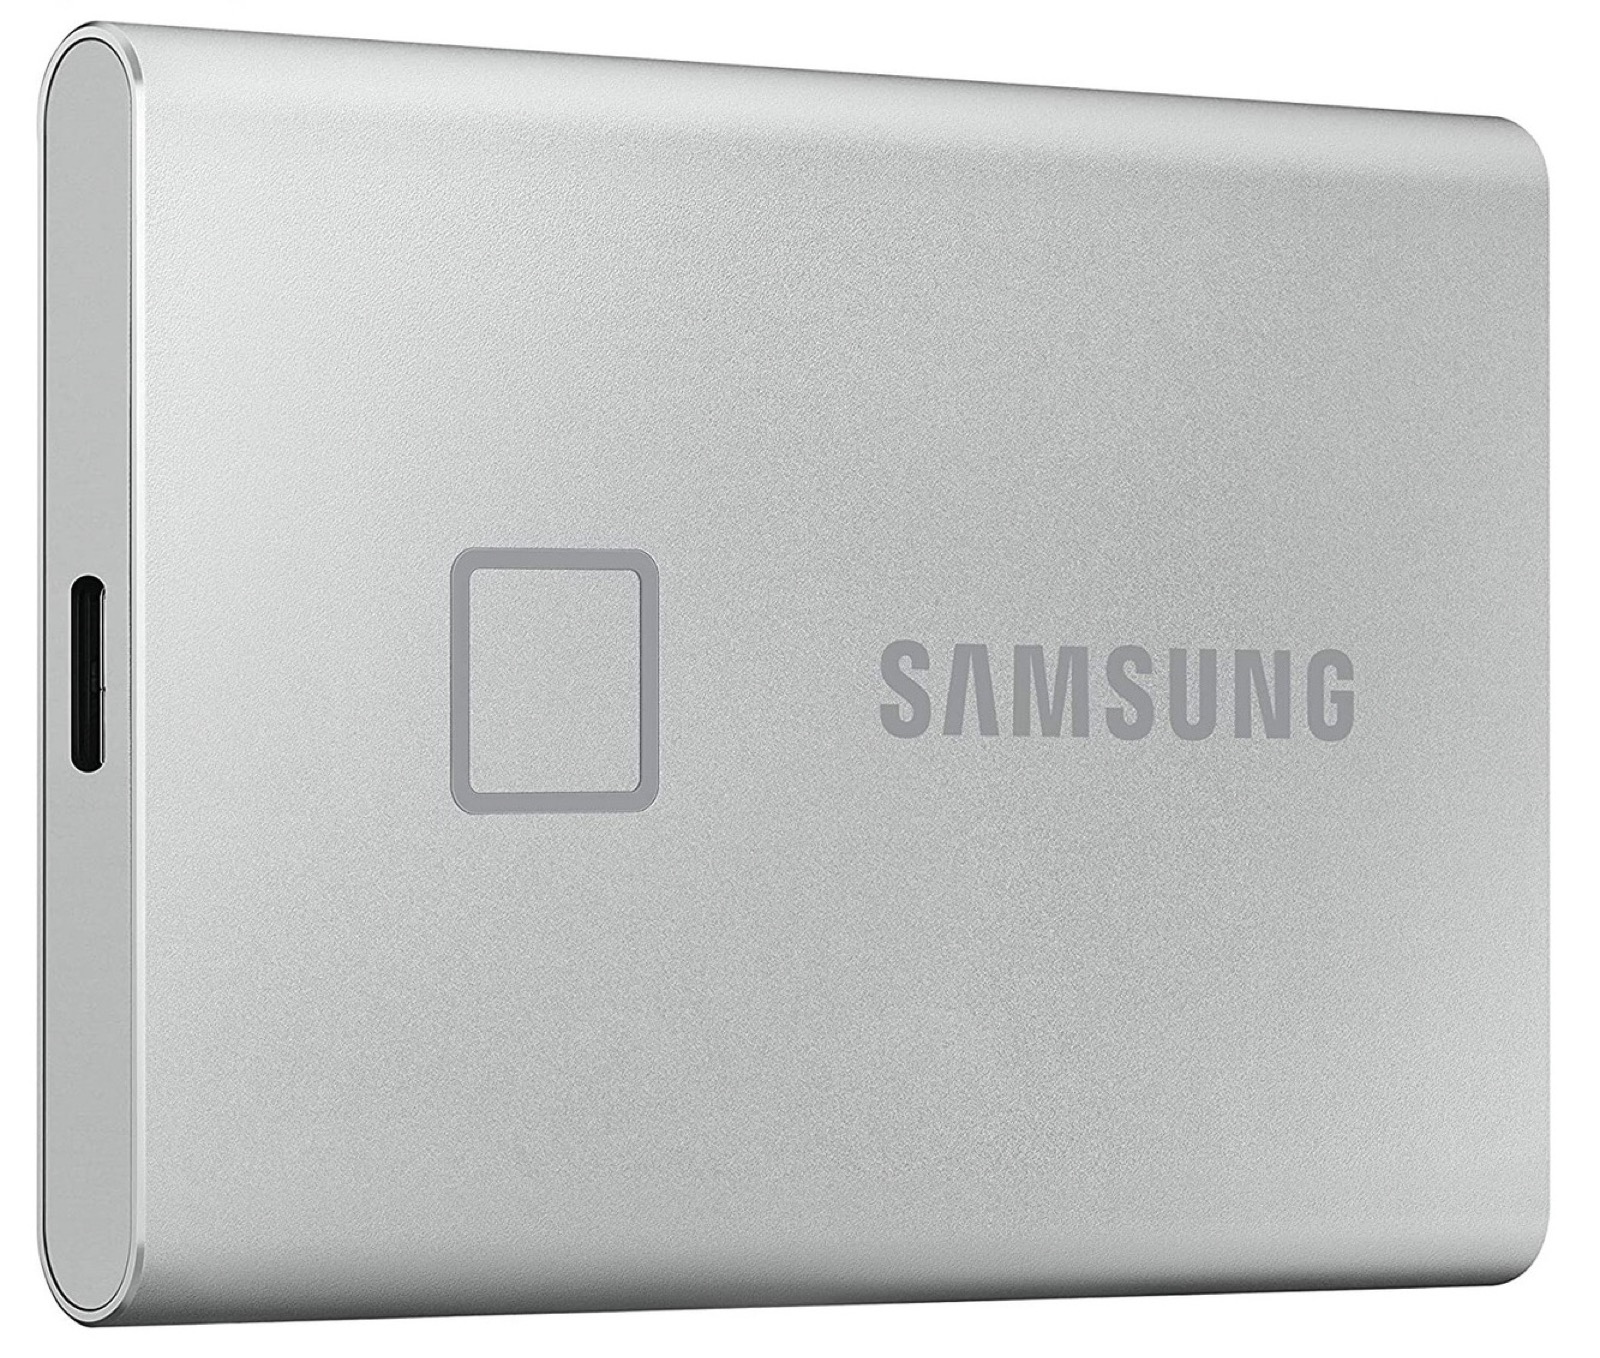 Memorie Samsung in Offerte Primavera tra SSD e microSD